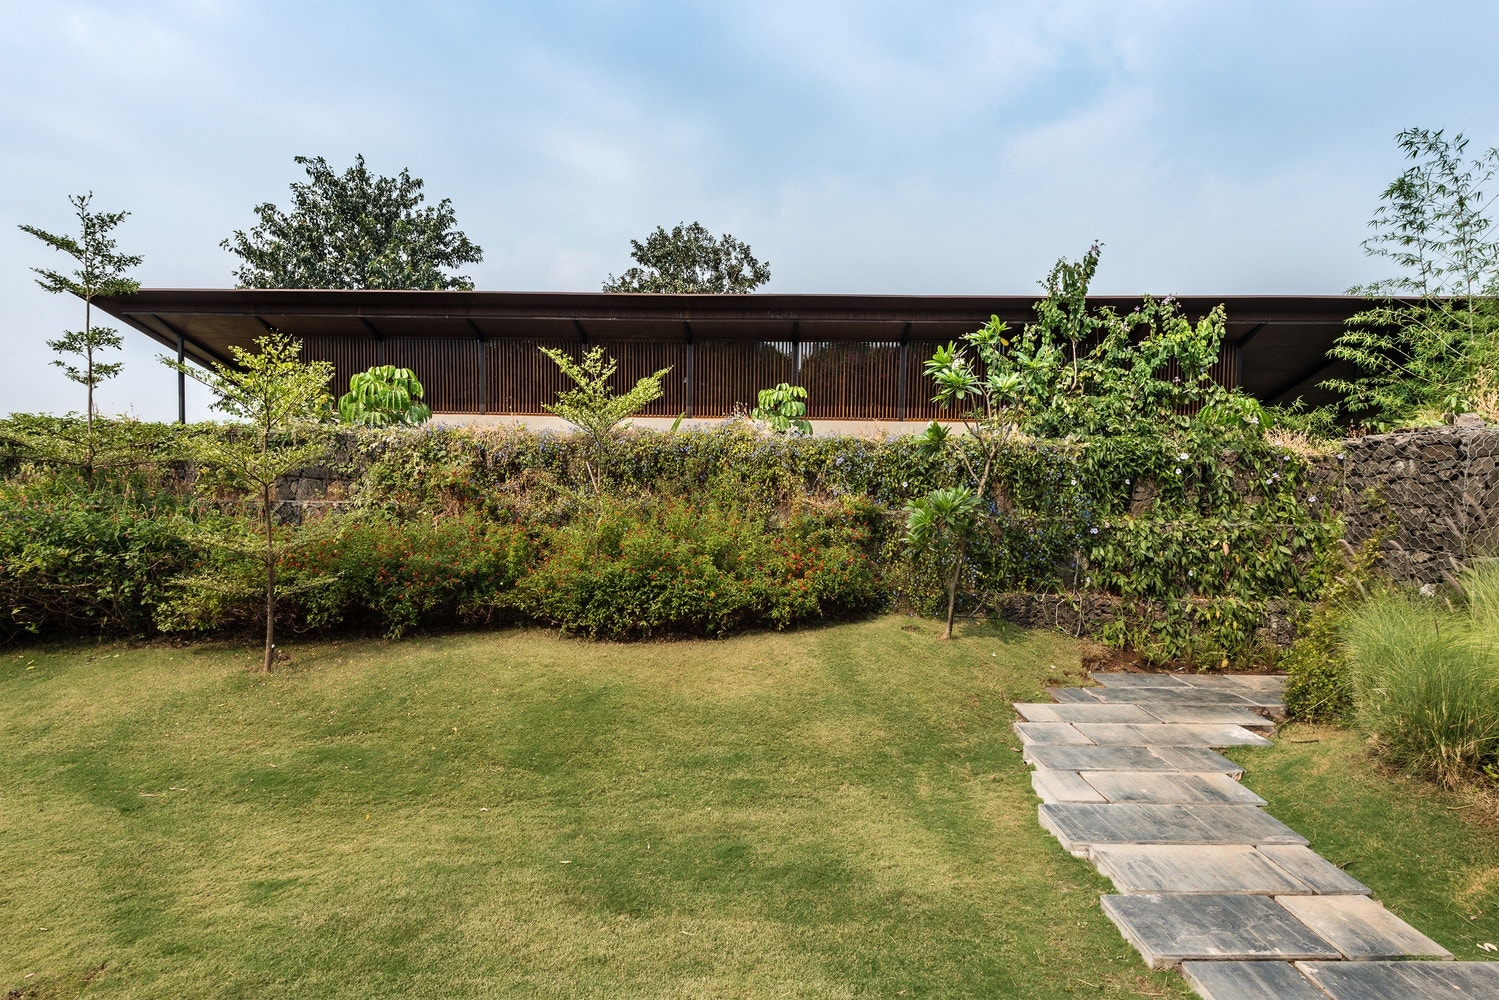 息を呑むほどの絶景を一望できるインドの大自然に建つ邸宅をチェック インド ムンバイ 自然 プール hypebeast ハイプ ビースト 建築